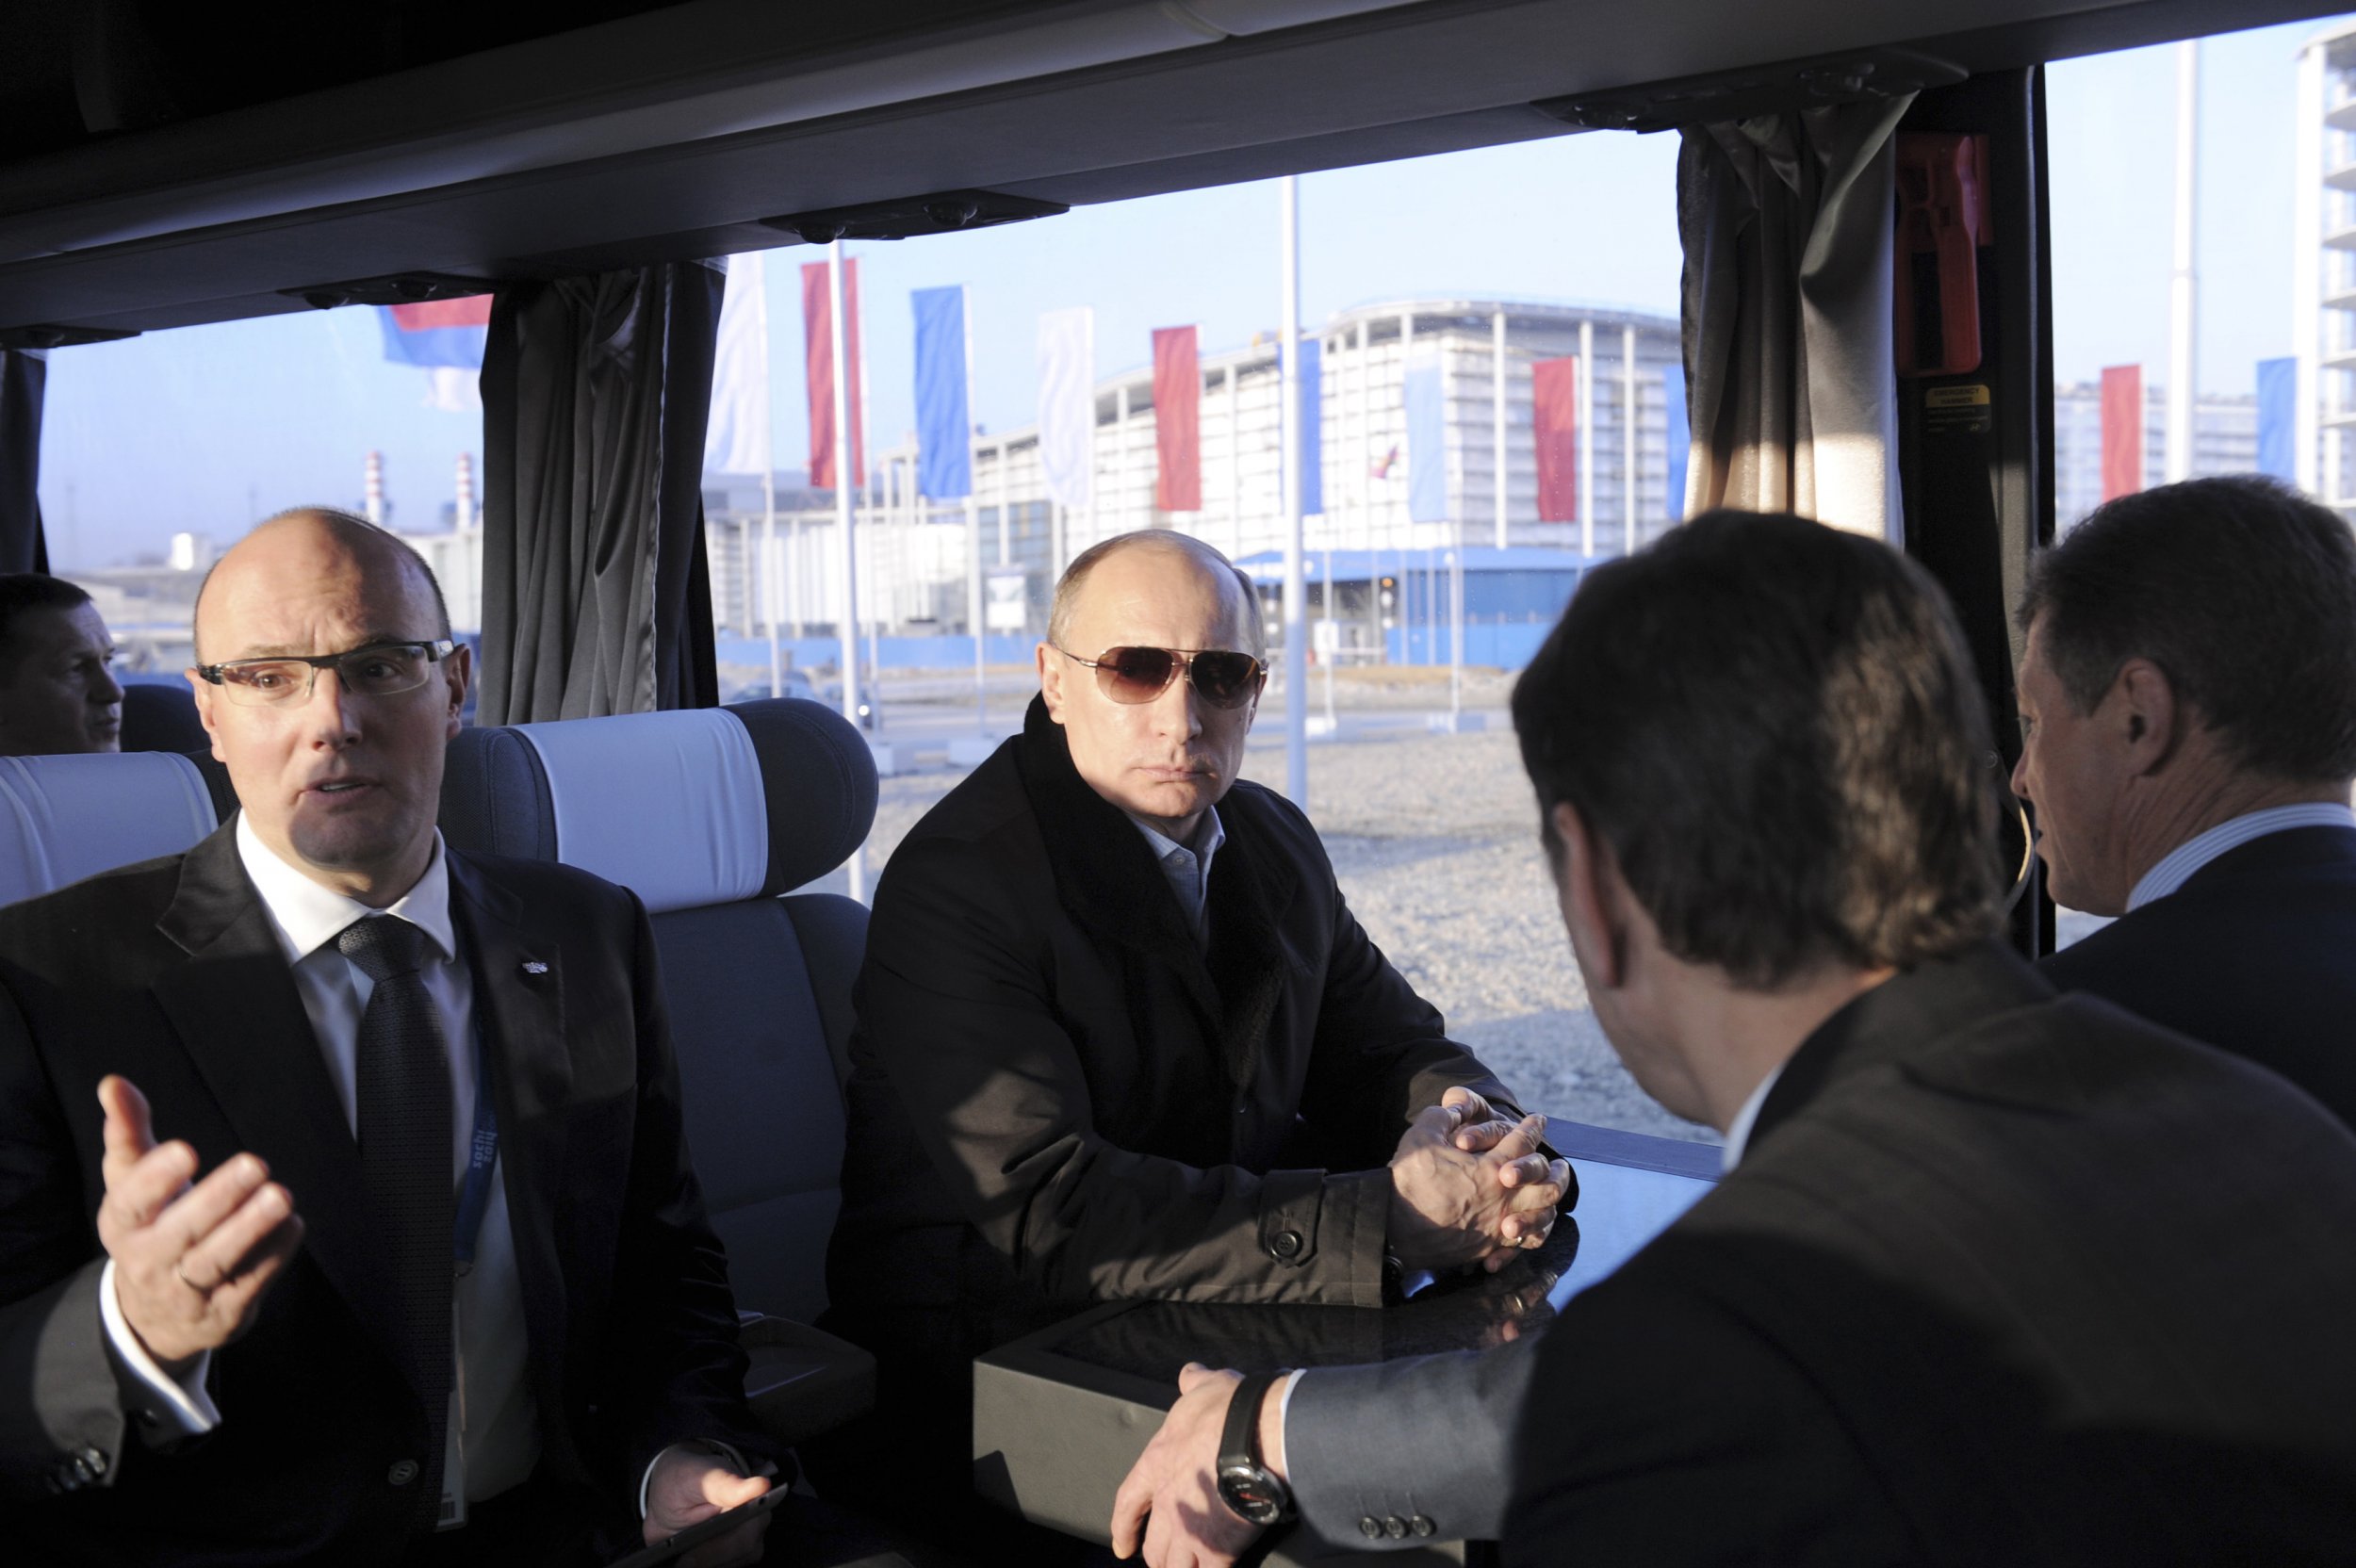 Putin on a bus